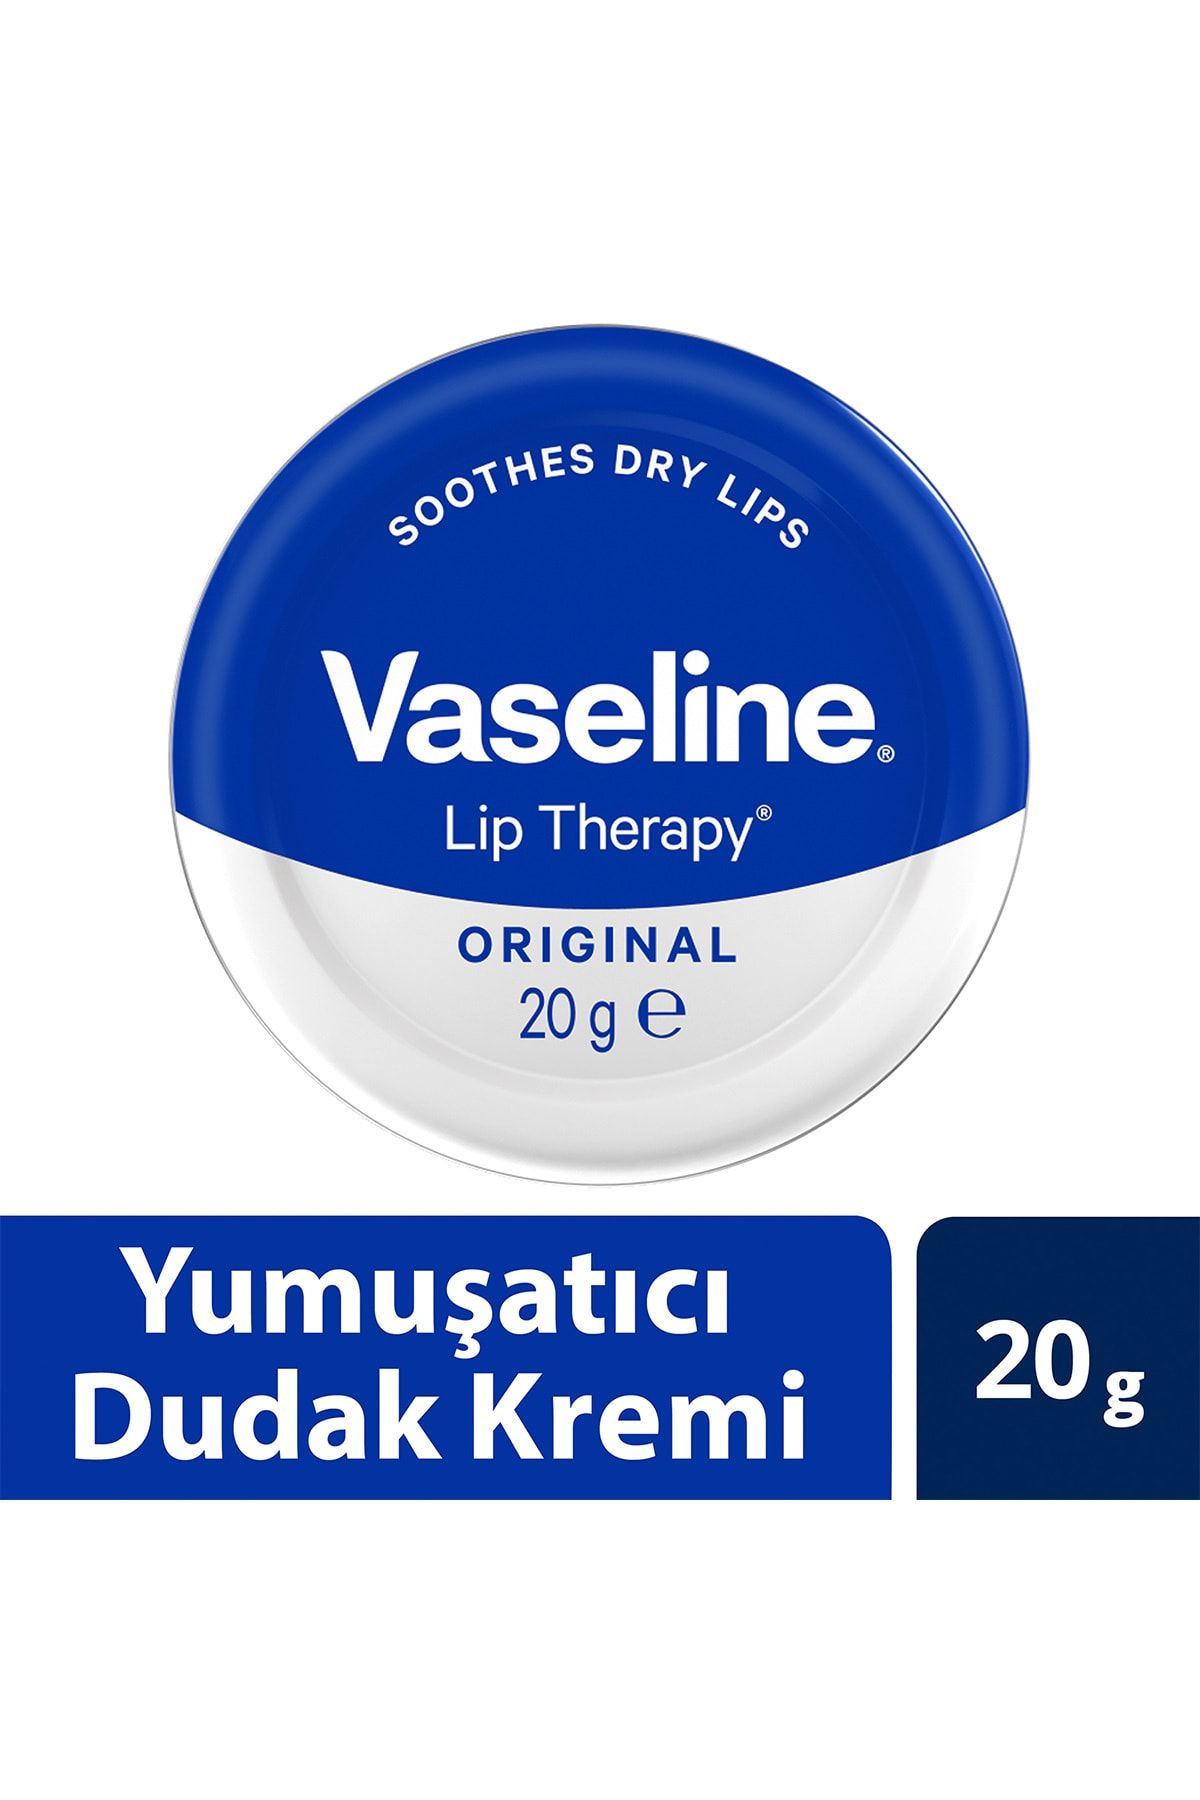 Vaseline Lip Therapy Yumuşatıcı Dudak Kremi Original 20 G